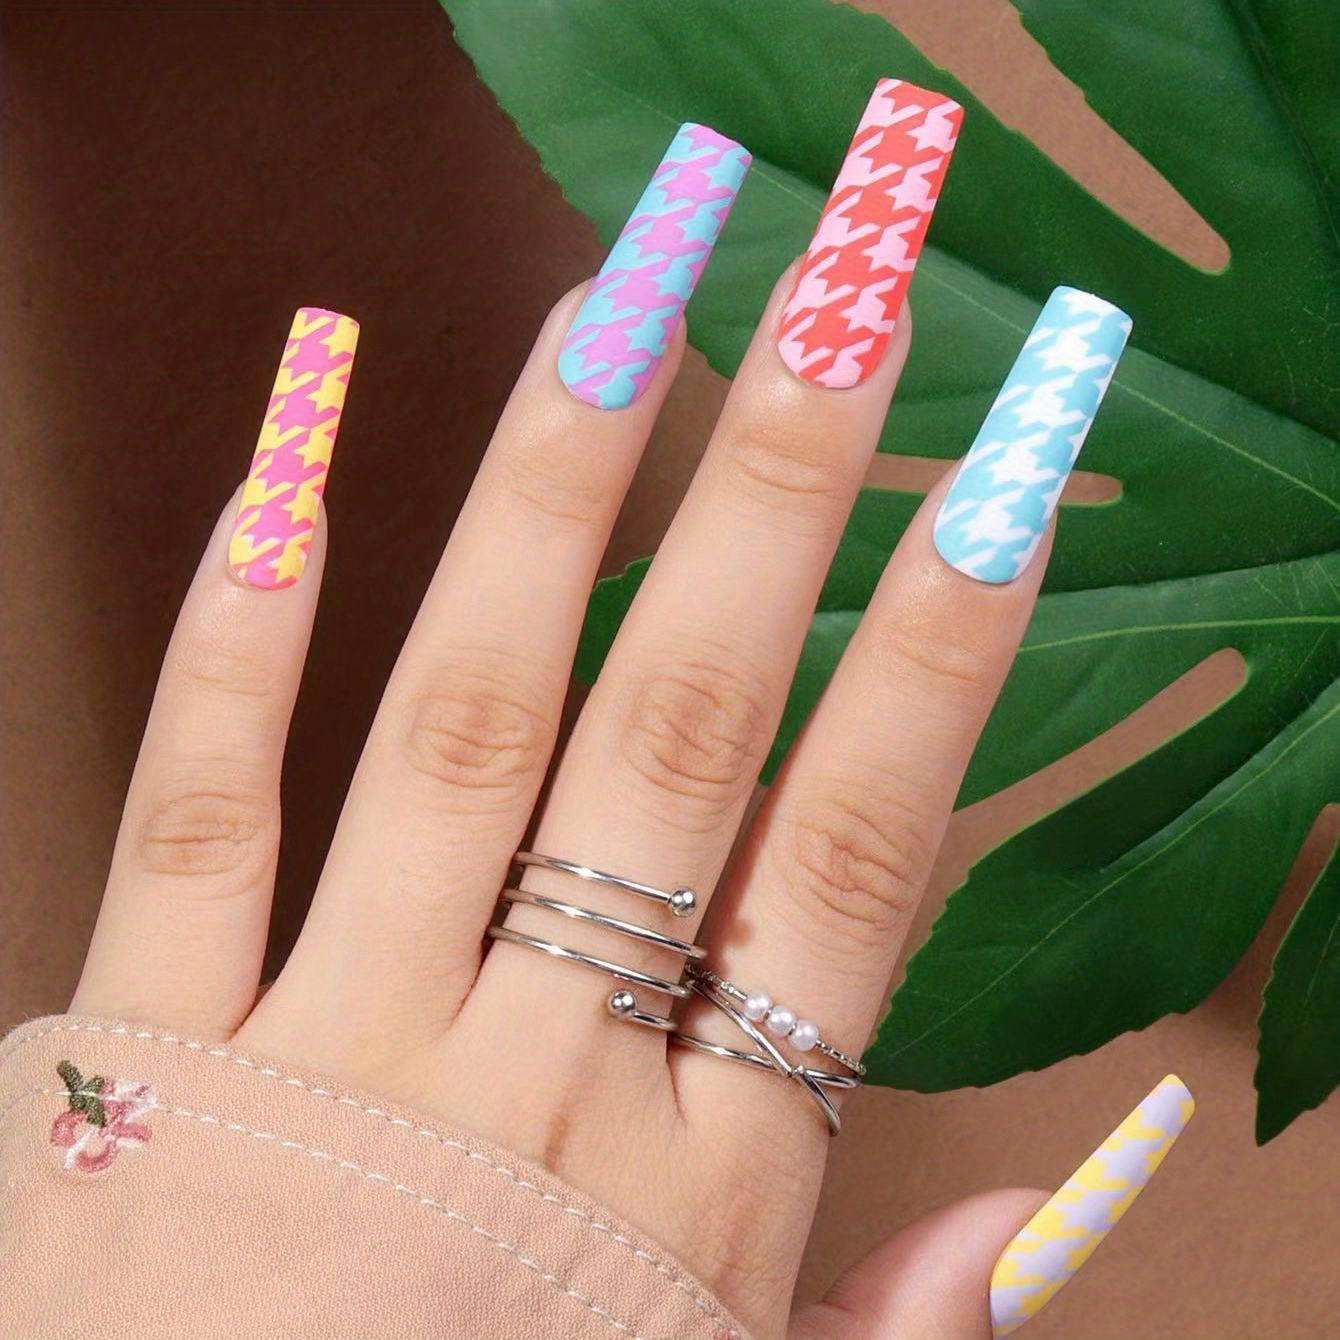 Louis Vuitton Nails  Acrylic nails, Grunge nails, Acrylic nails